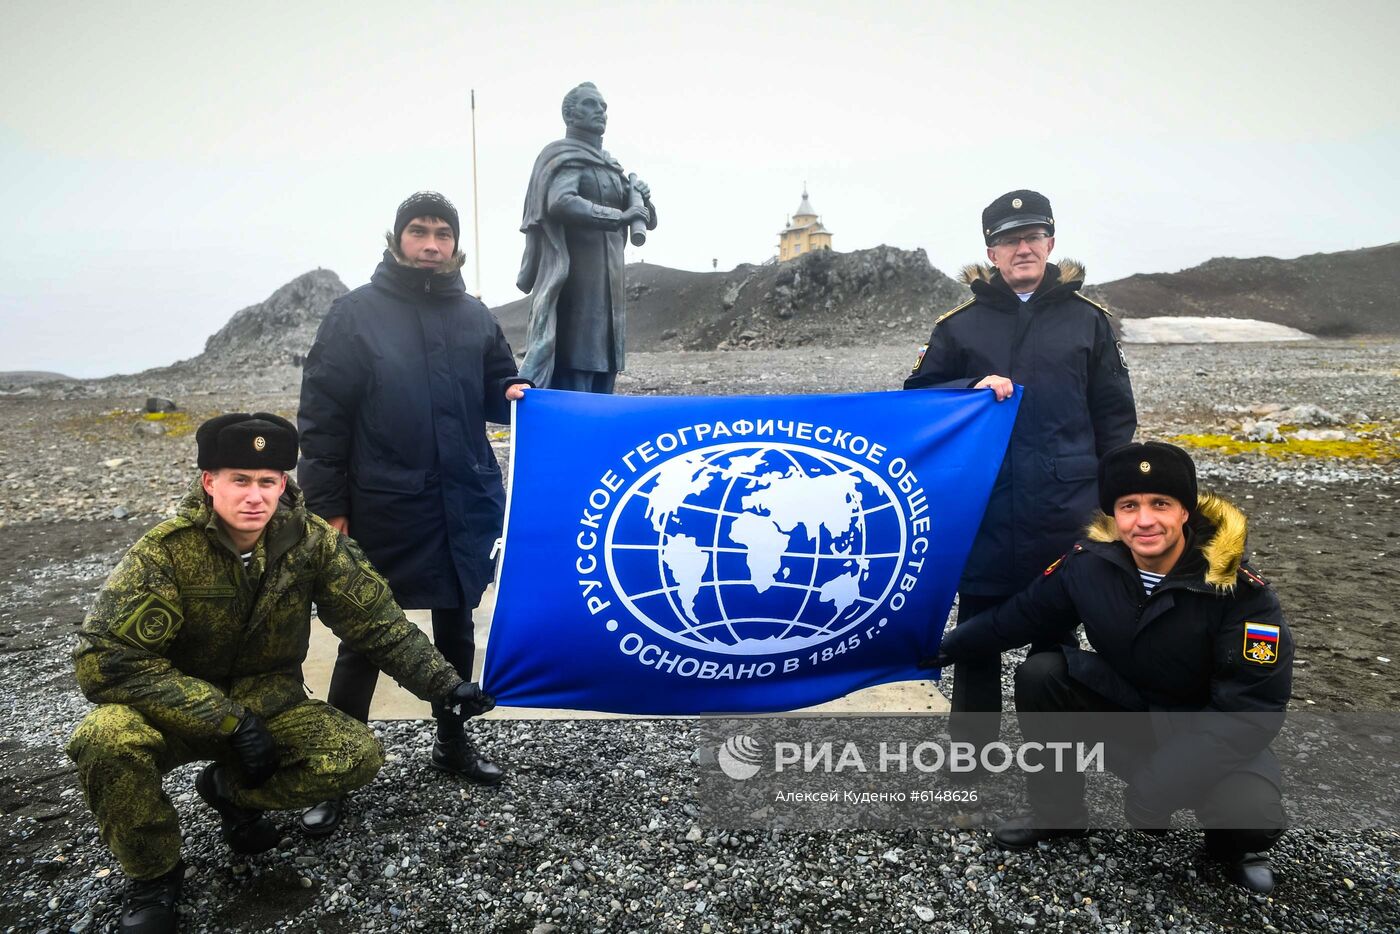 Мероприятия на "Беллинсгаузене" в честь 200-летия открытия Антарктиды русскими моряками